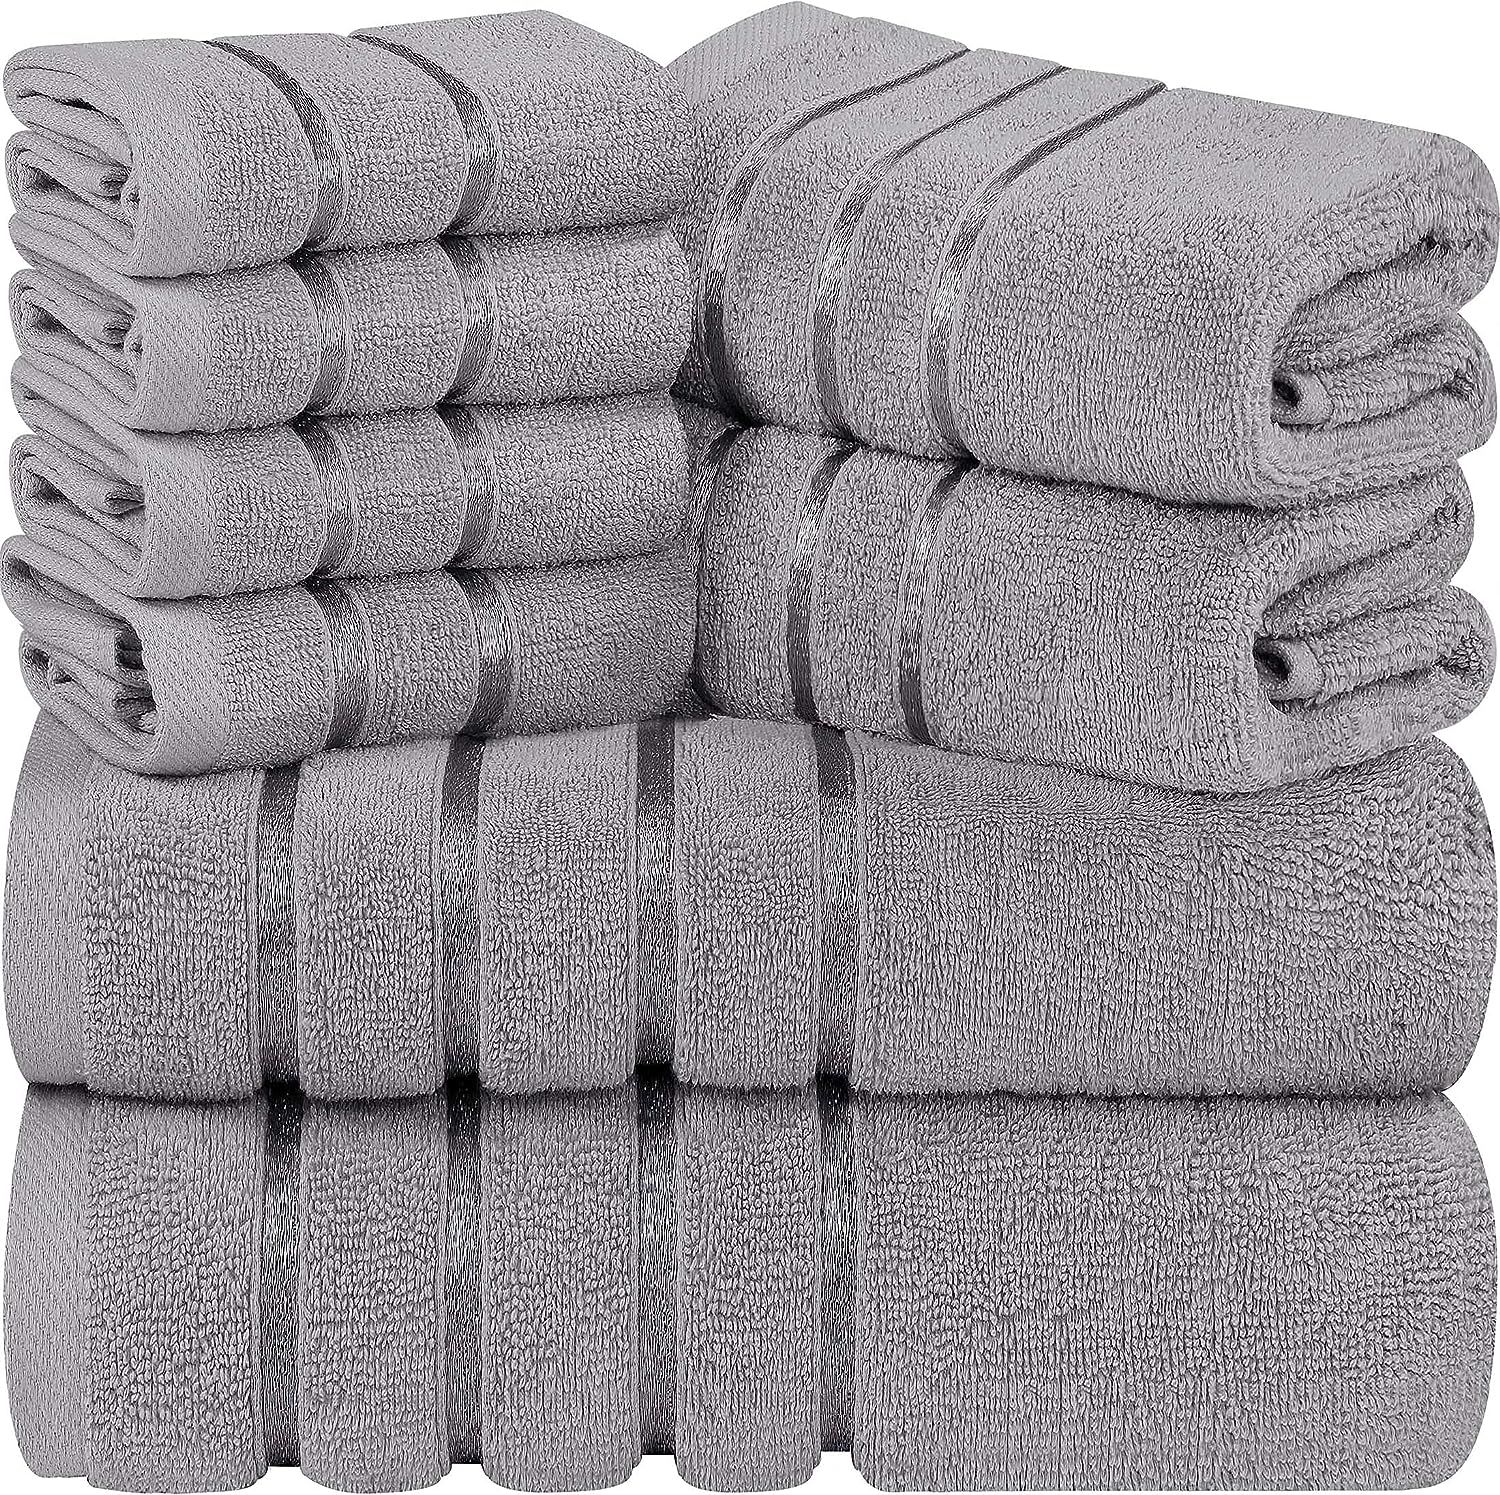 Utopia Towels Cool Grey 8-Piece Bath Linen Sets - Viscose Stripe Towels - 600 GSM Ring Spun Cotton - | Amazon (US)